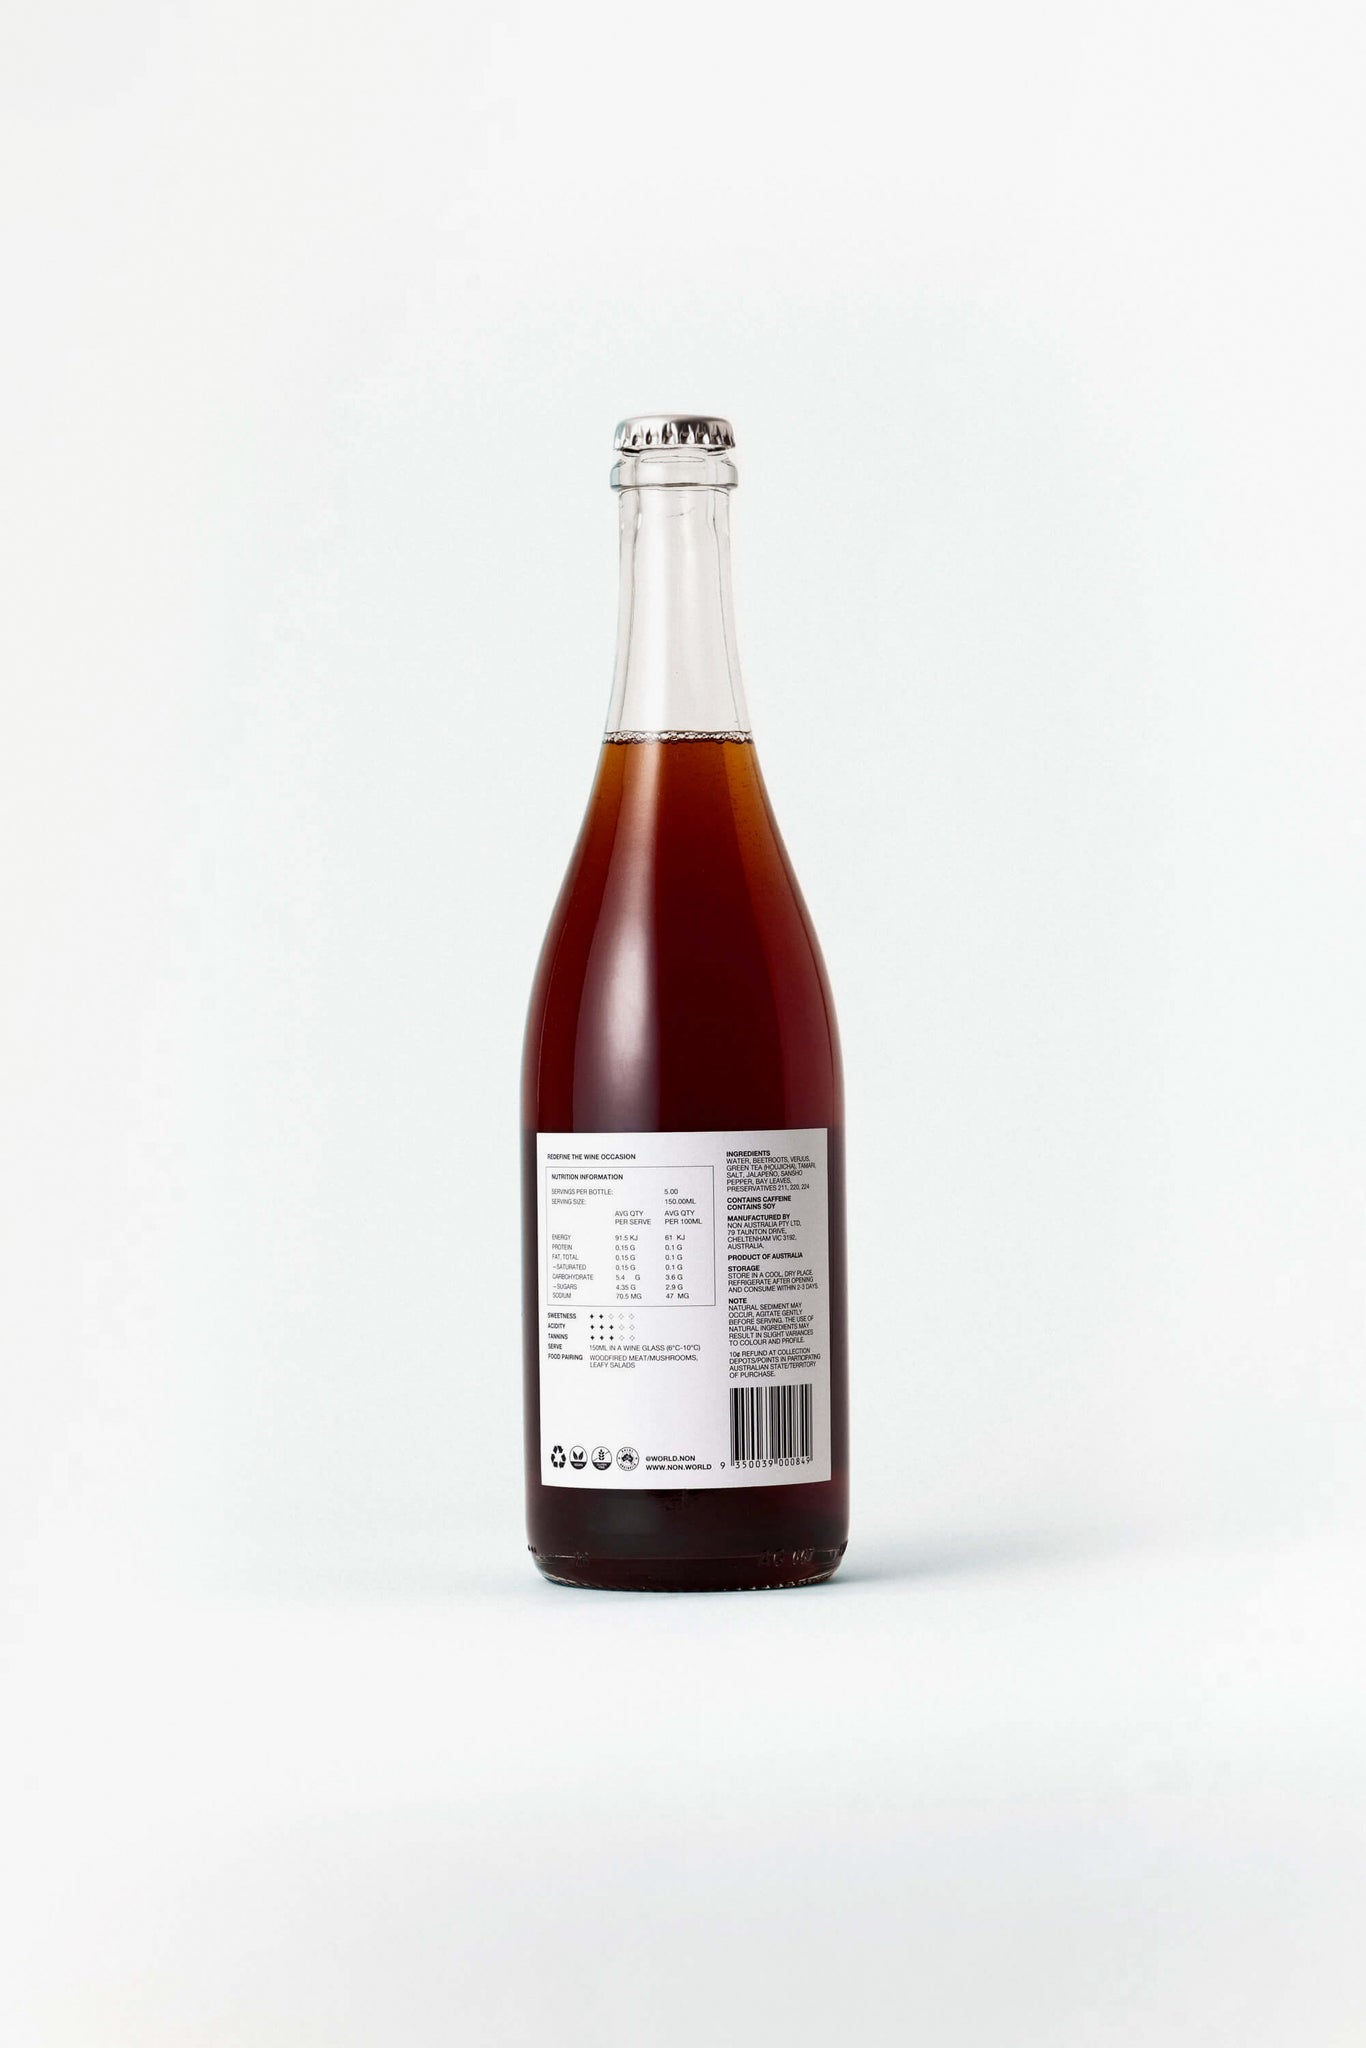 NON4 Roast Beetroot & Sansho bottle back label 